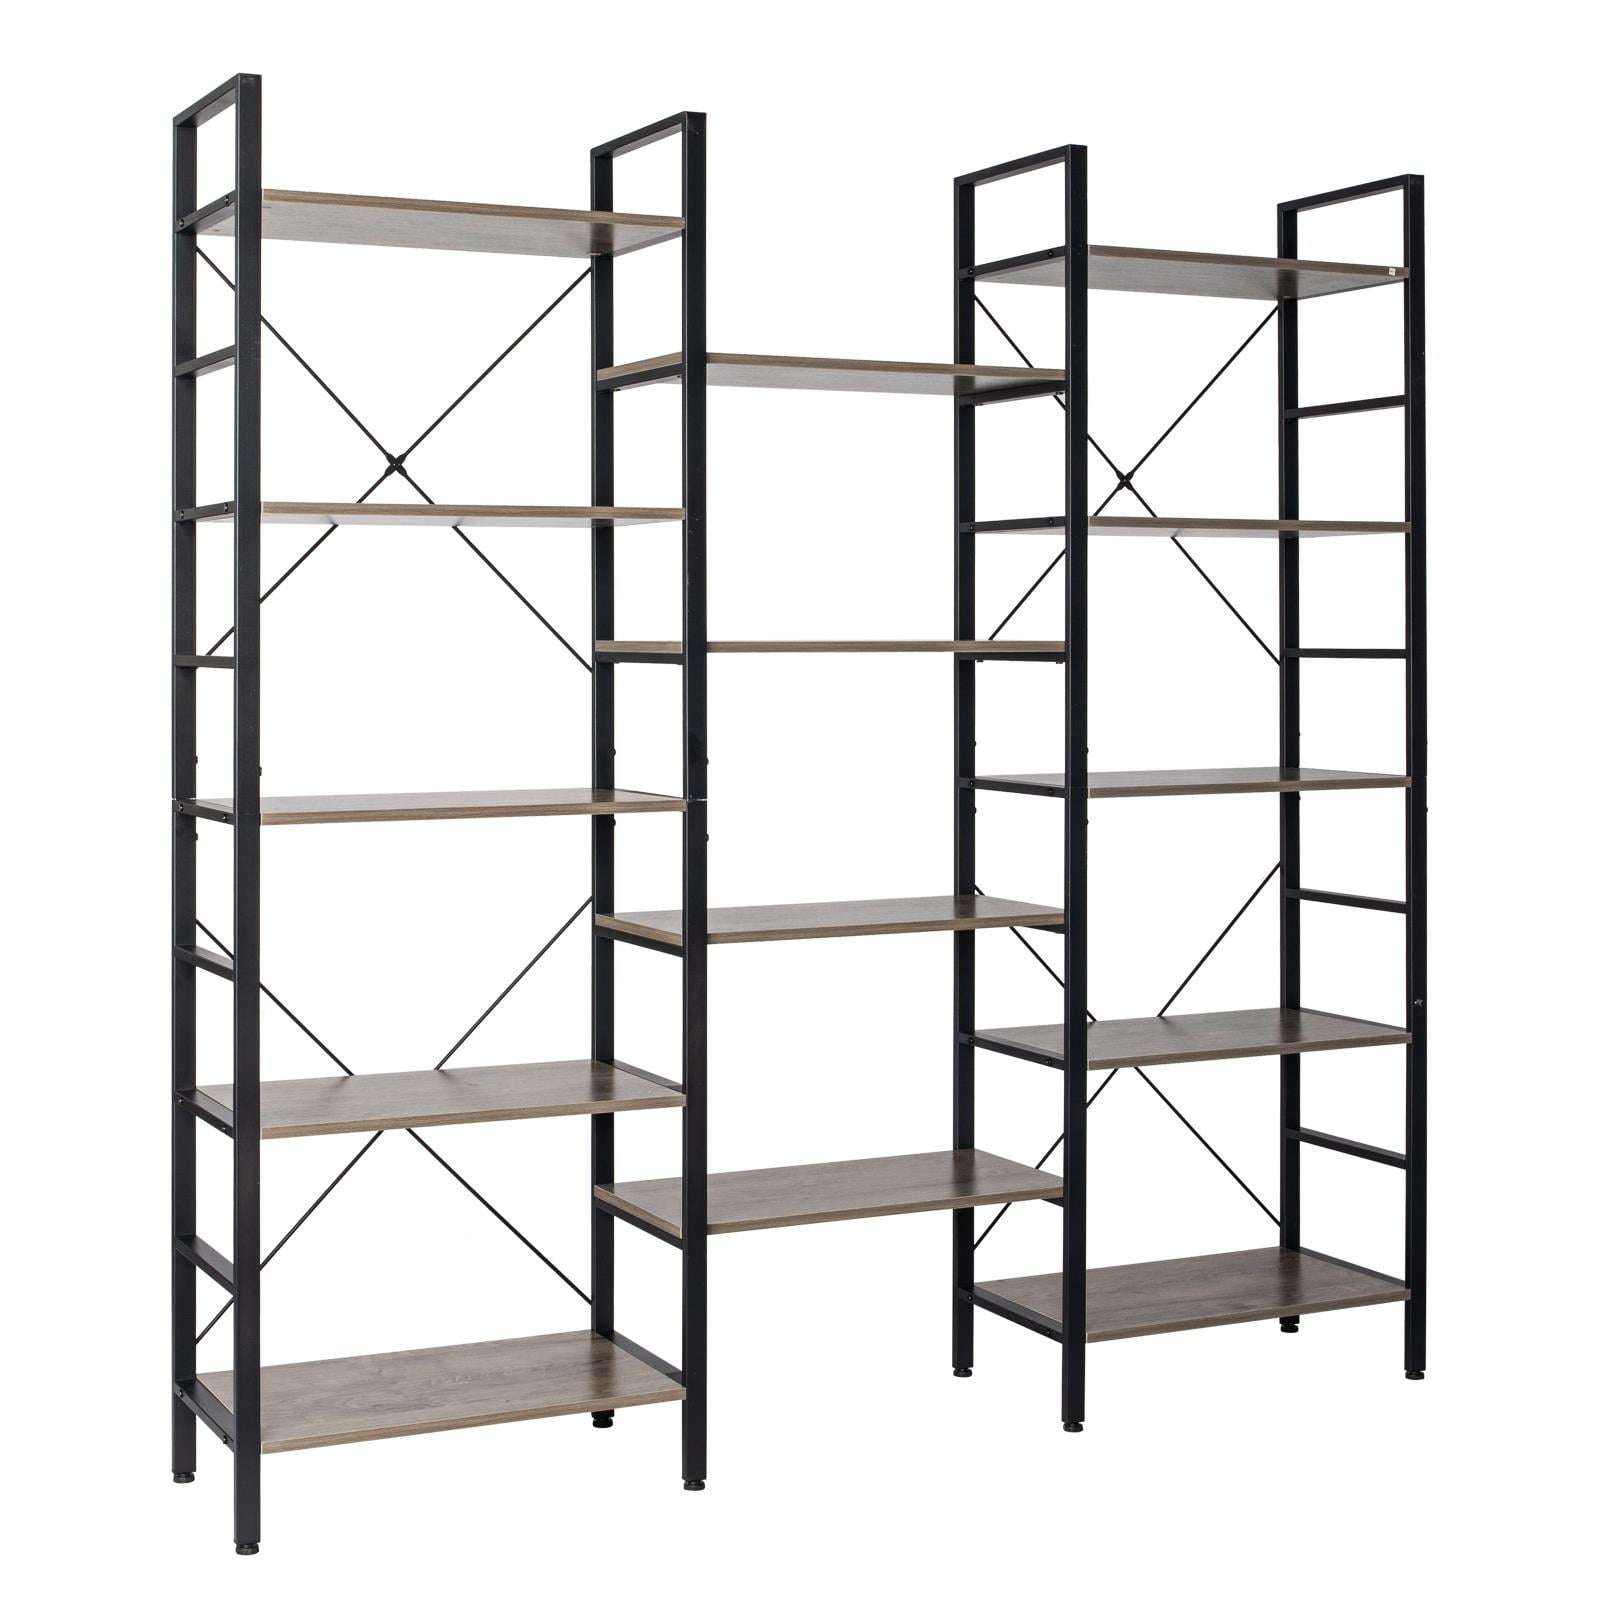 Details about   Bookshelf Rack 5 Tier Book Rack Bookcase Storage Organizer Modern Wood Accent